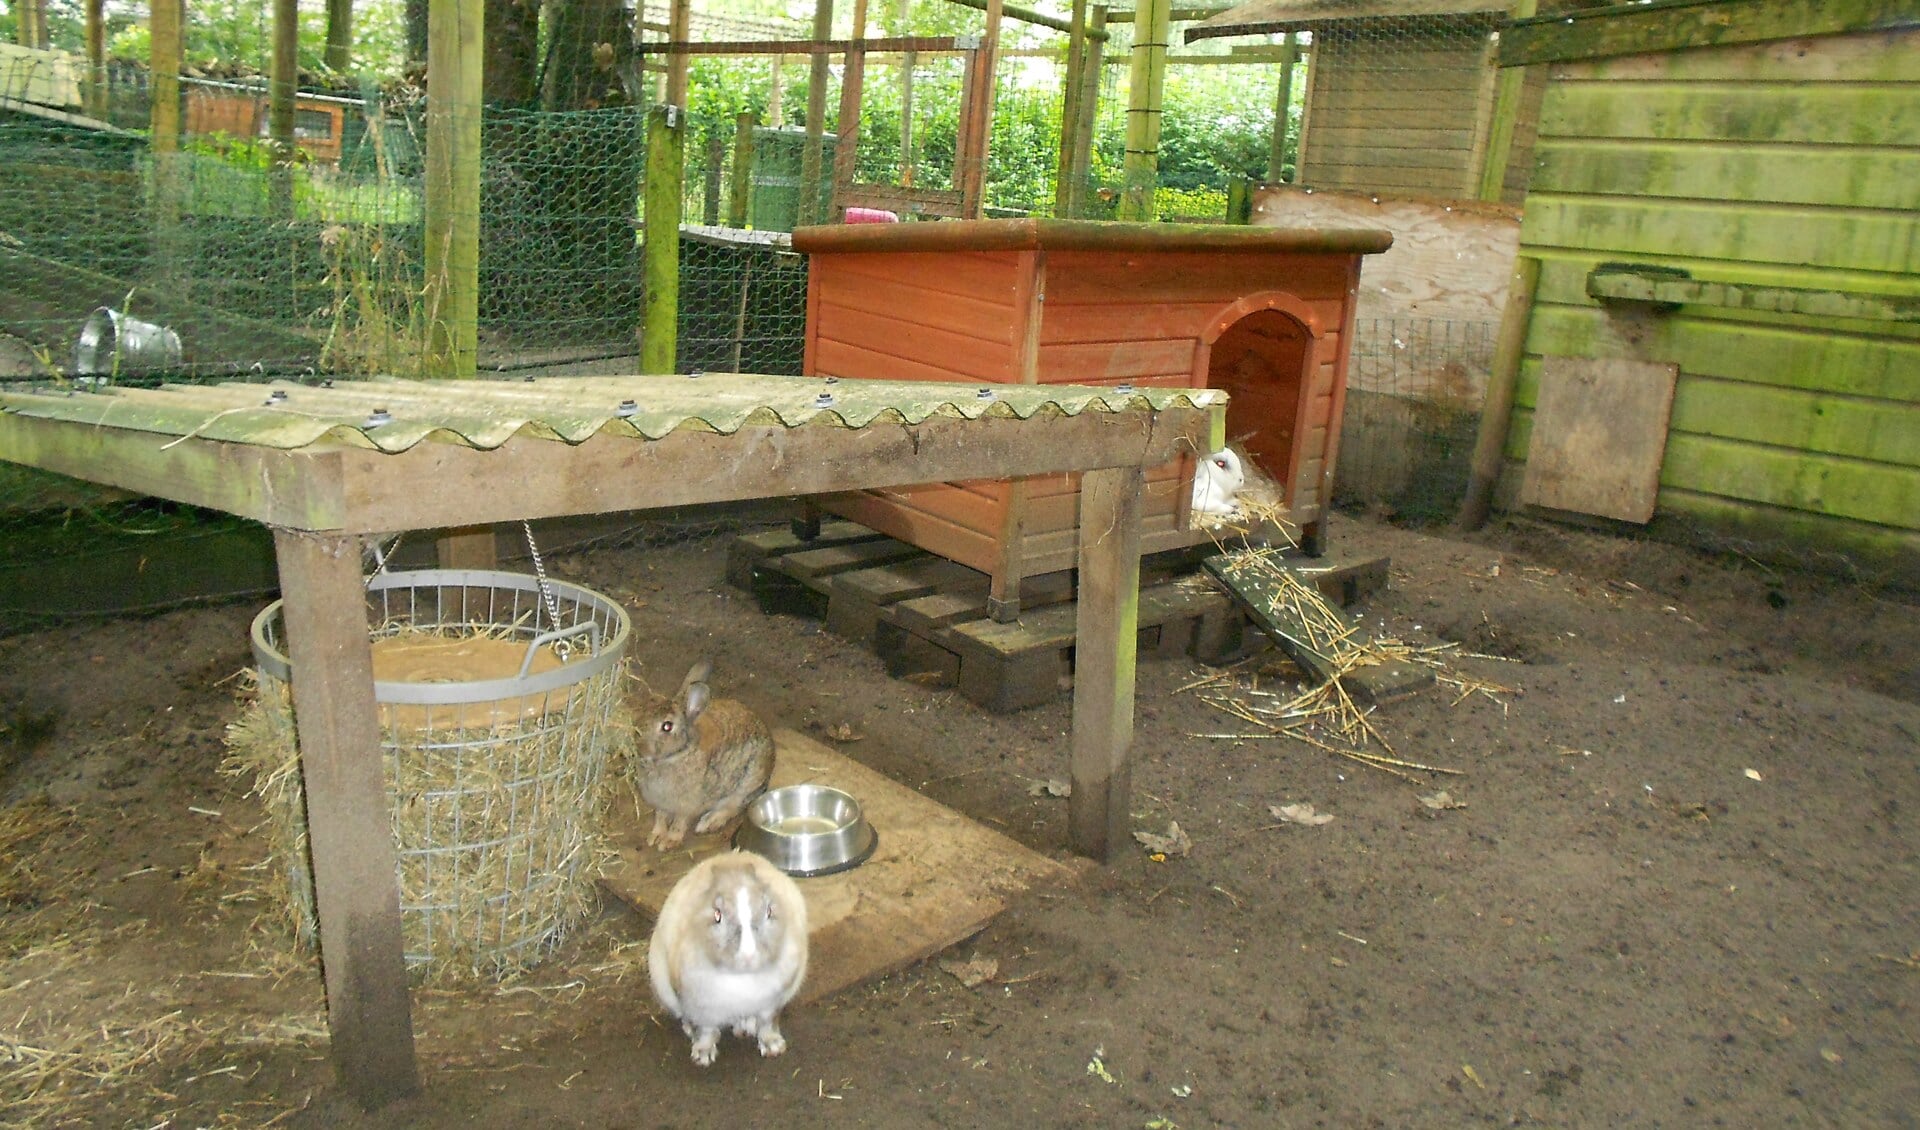 Deze konijnen hebben het goed in hun ruime verblijven. Konijnenopvang Loesje beijvert zich voor dezelfde goede omstandigheden bij uitplaatsing van de konijnen.